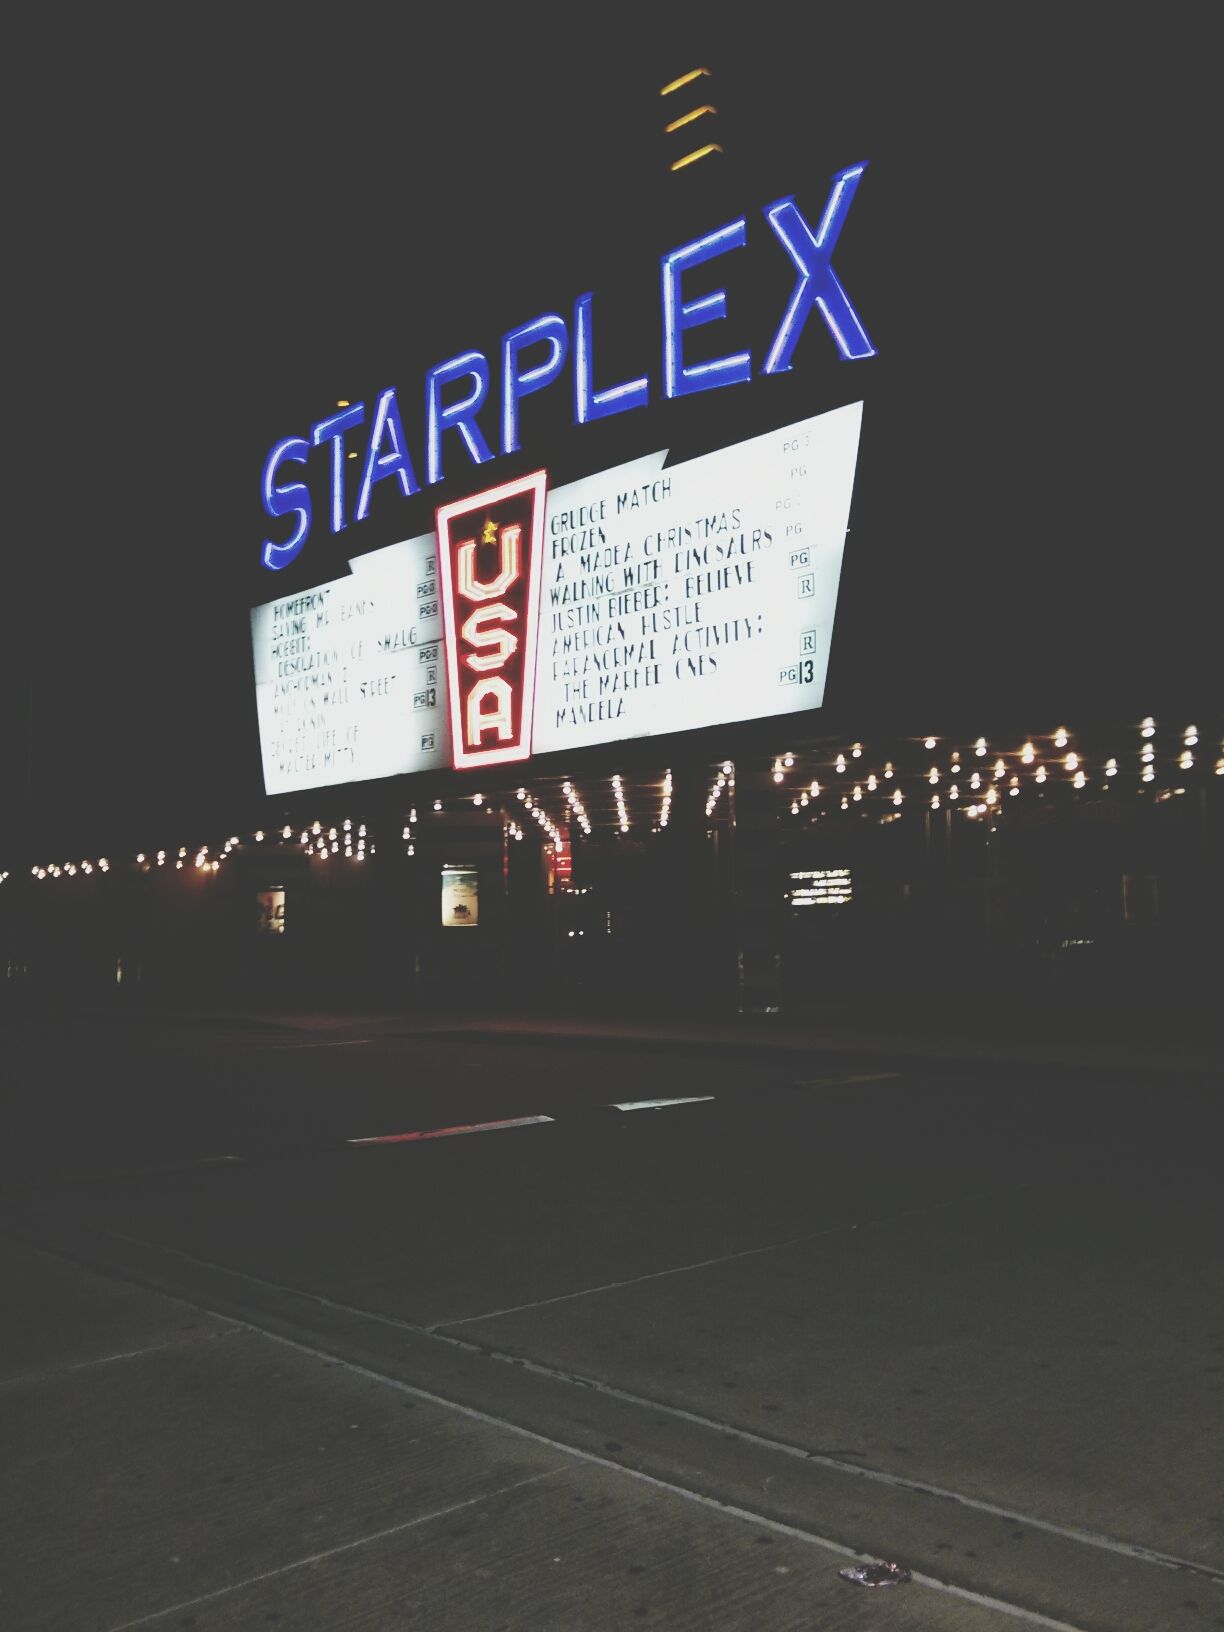 Starplex